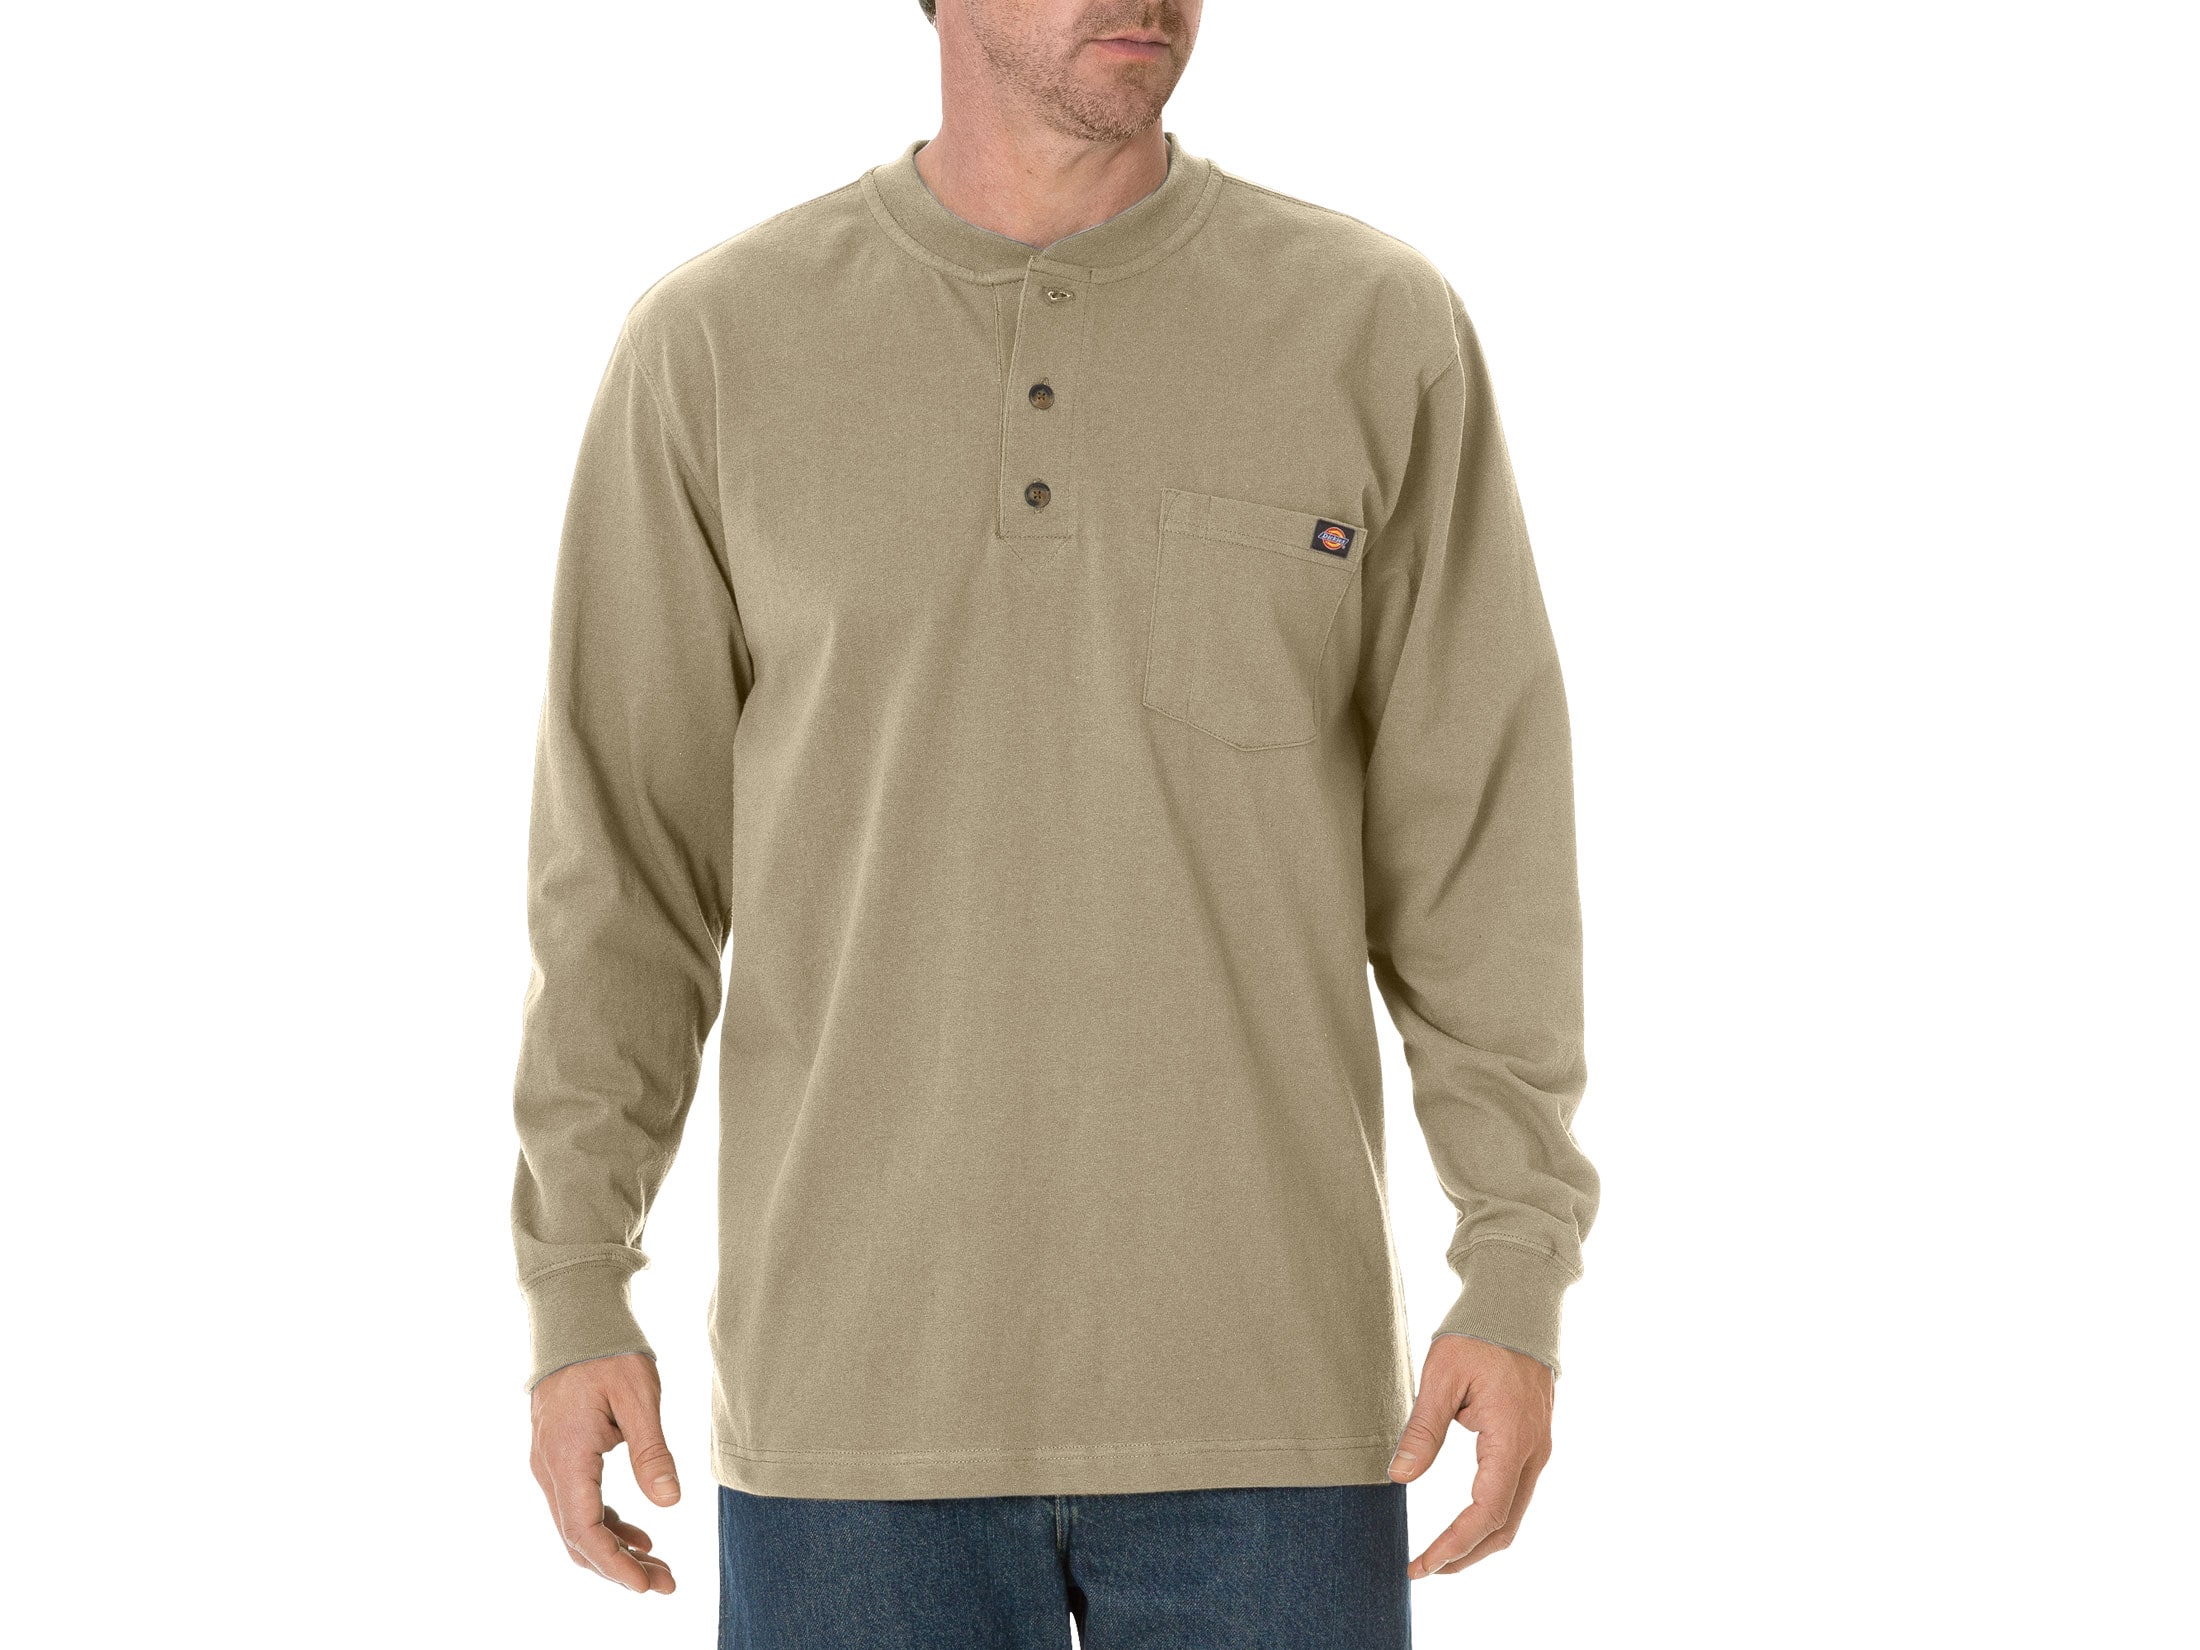 Dickies Men's Henley T-Shirt Long Sleeve Cotton Desert Sand XL